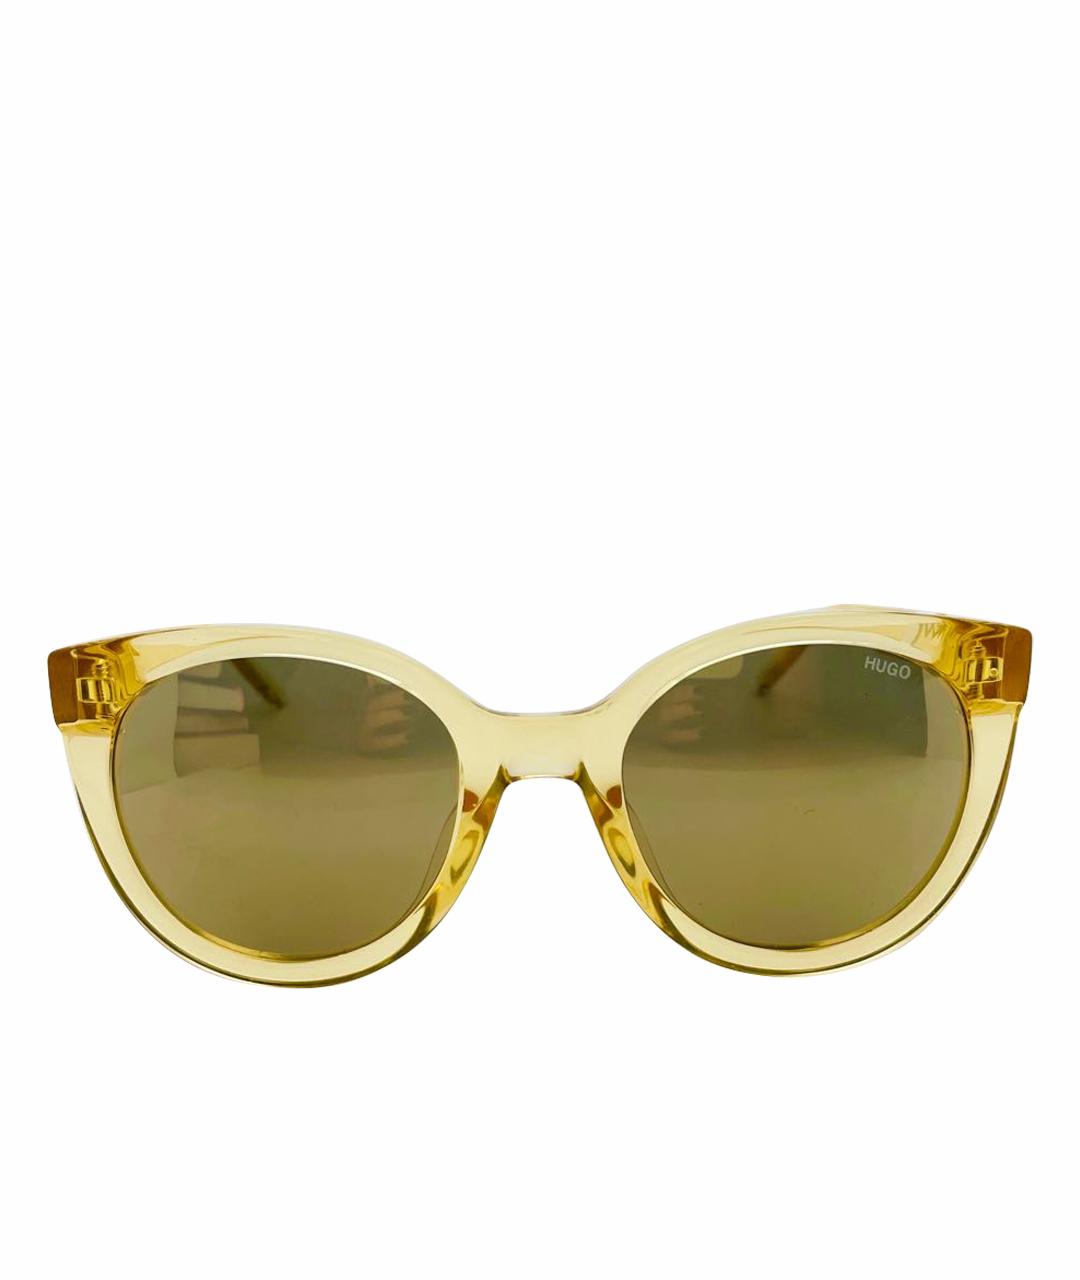 HUGO BOSS Желтые пластиковые солнцезащитные очки, фото 1